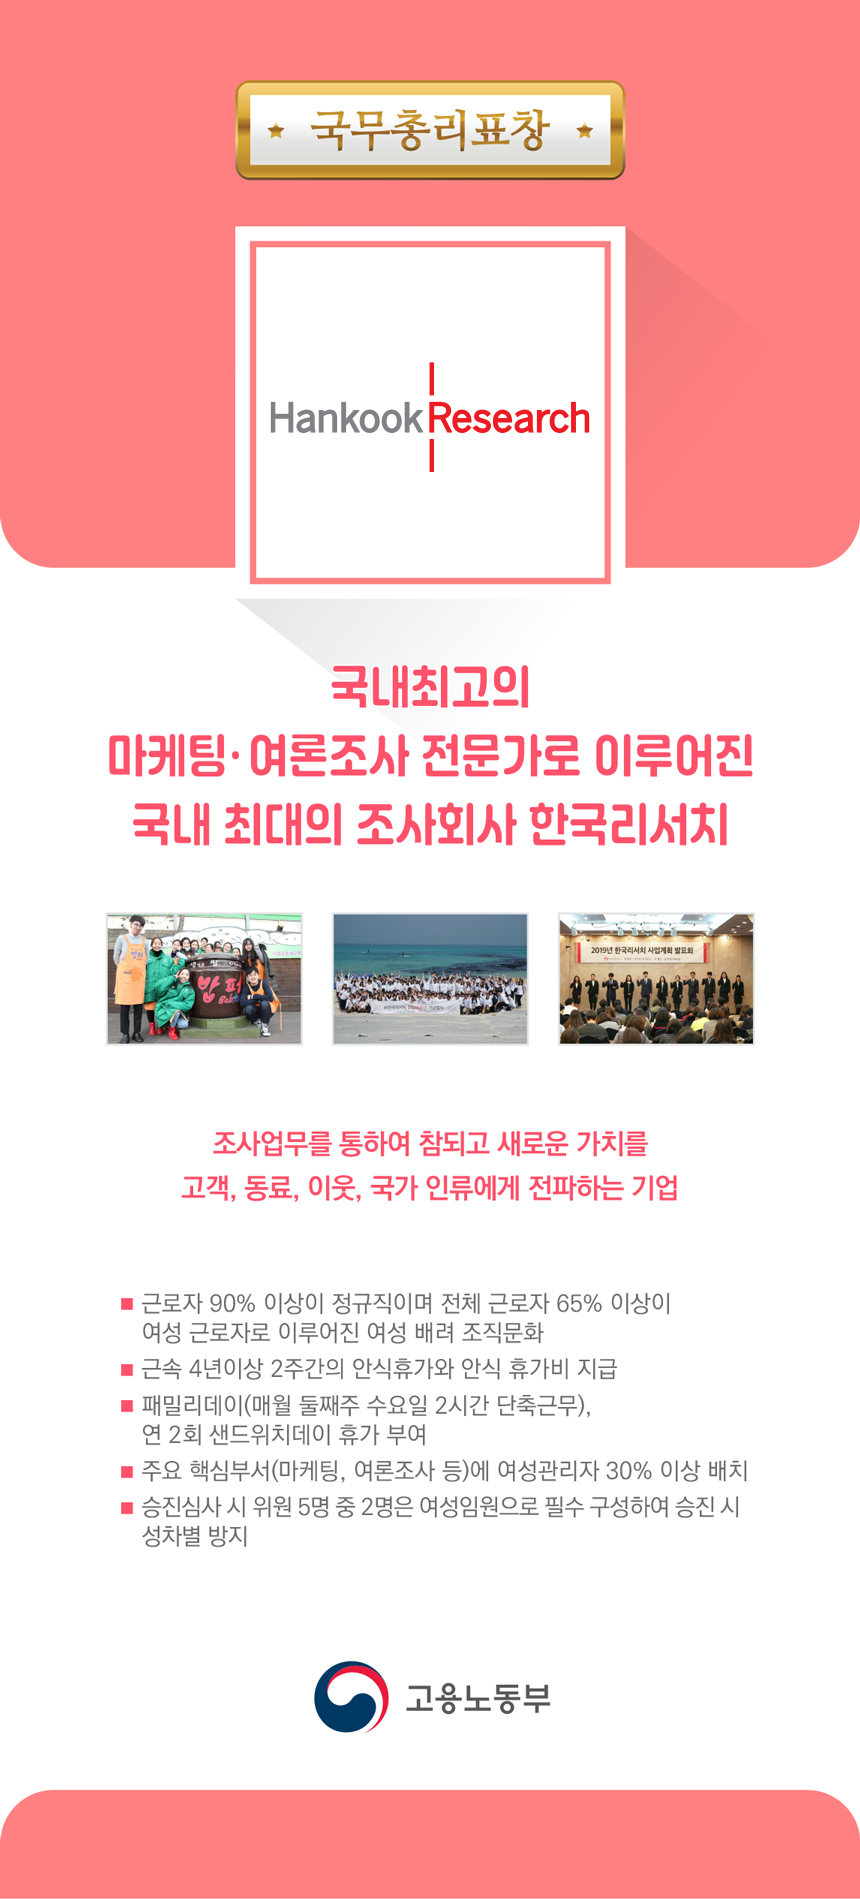 국무총리표창 국내최고의 마케팅, 여론조사 전문가로 이루어진 국내 최대의 조사회사 한국 리서치